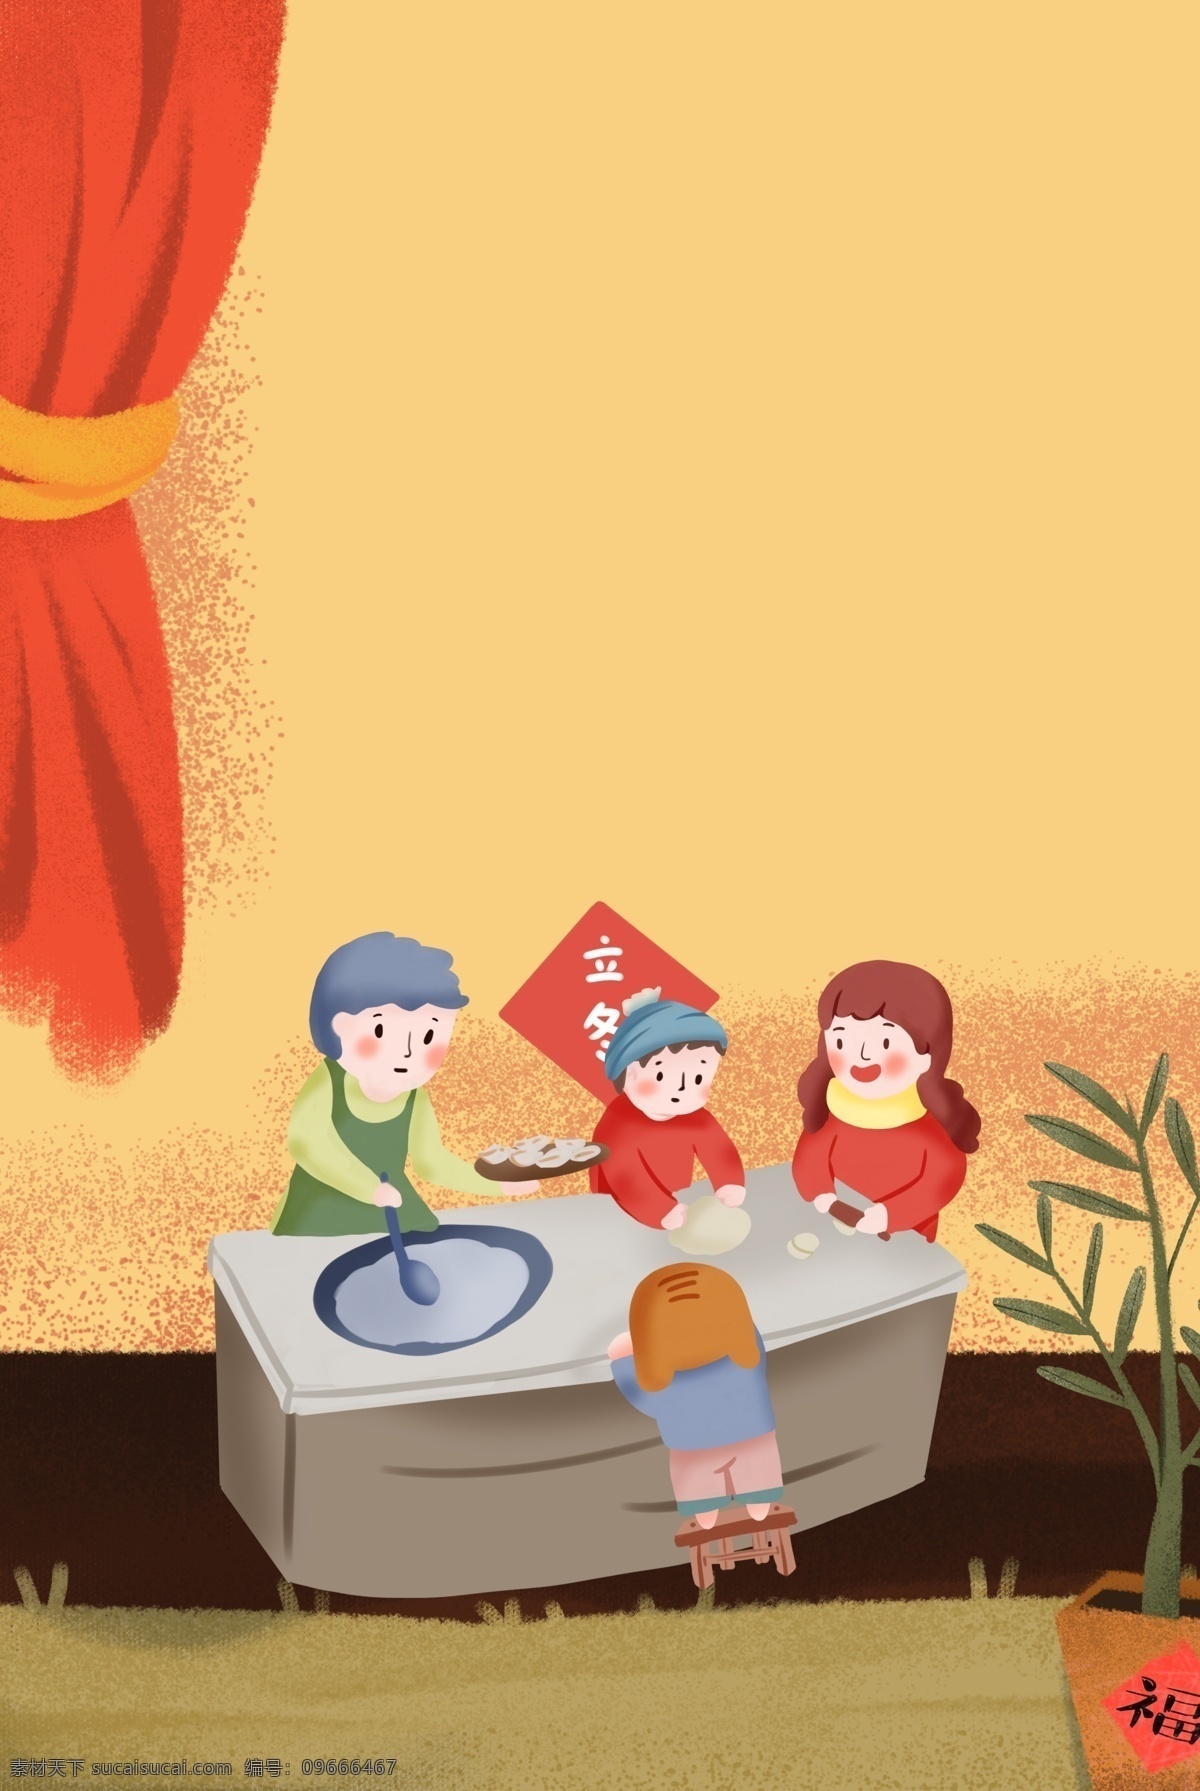 二十四节气 冬至 吃 饺子 习俗 插画 海报 传统节气 食物 人物 温馨 家居 促销海报